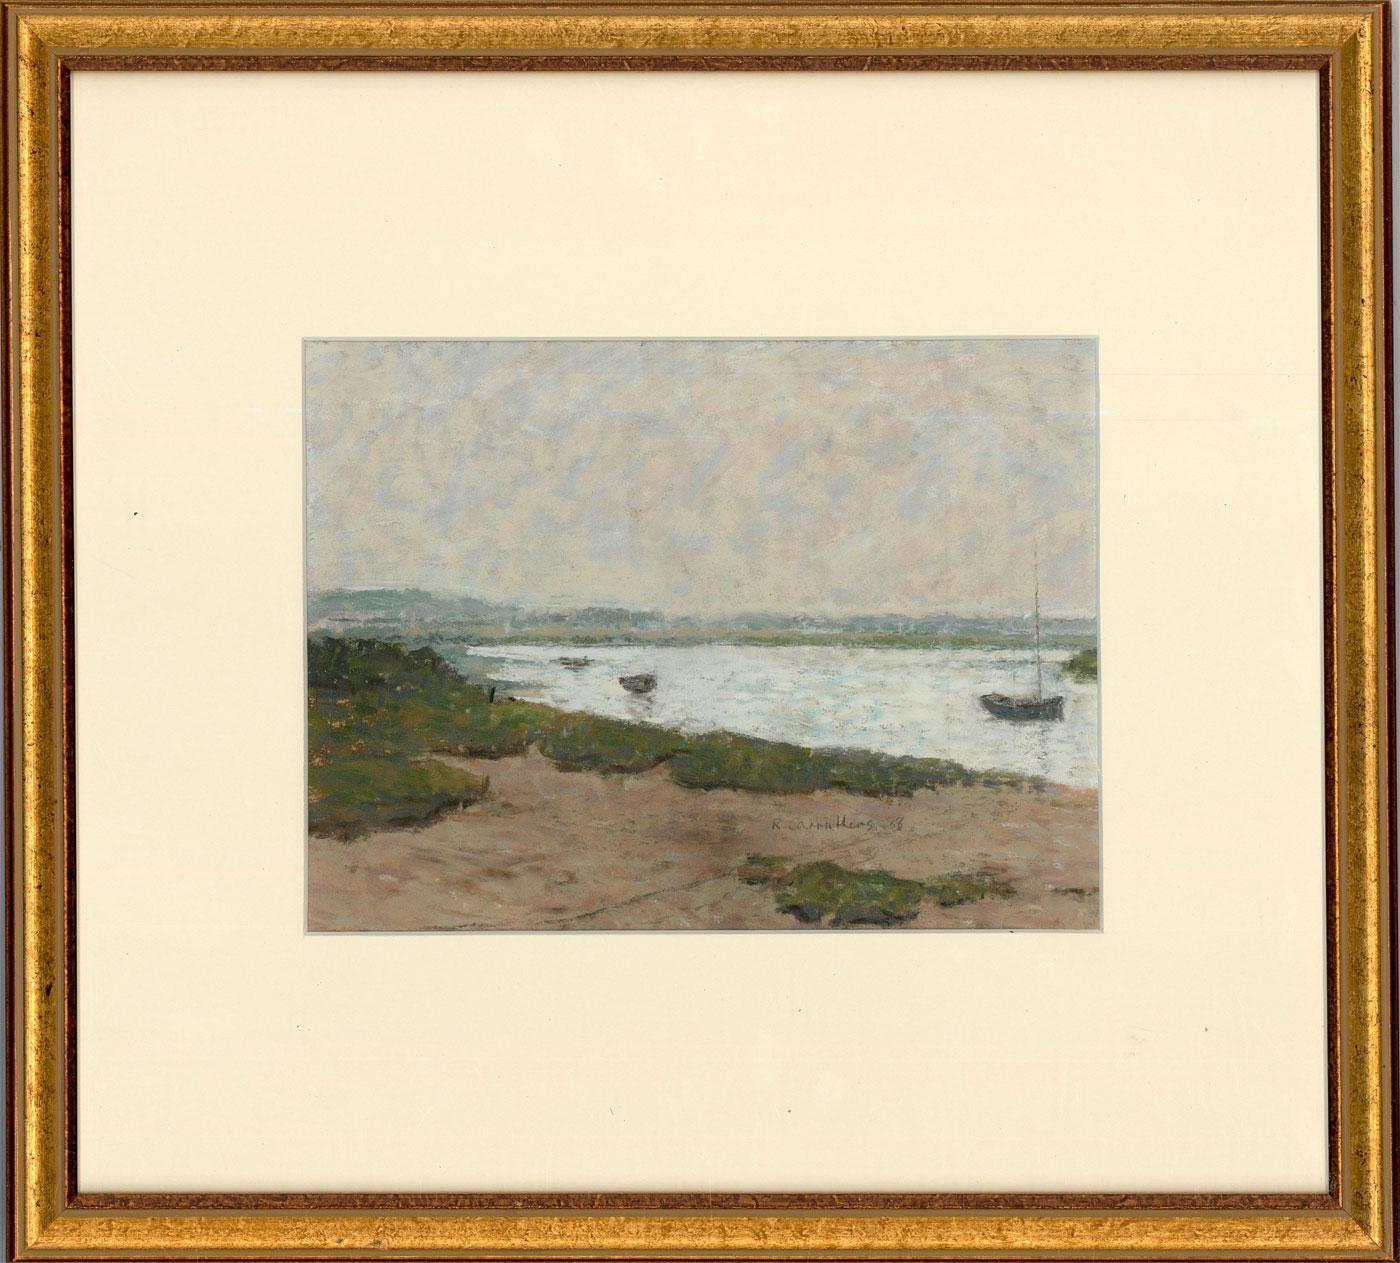 Un paysage original à la gouache, peint par l'artiste britannique Rosemary Carruthers. La scène dépeint une vue apaisante de l'estuaire, avec des voiliers amarrés sur une eau doucement ondulée. Le jour est couvert, l'estuaire reflétant le même